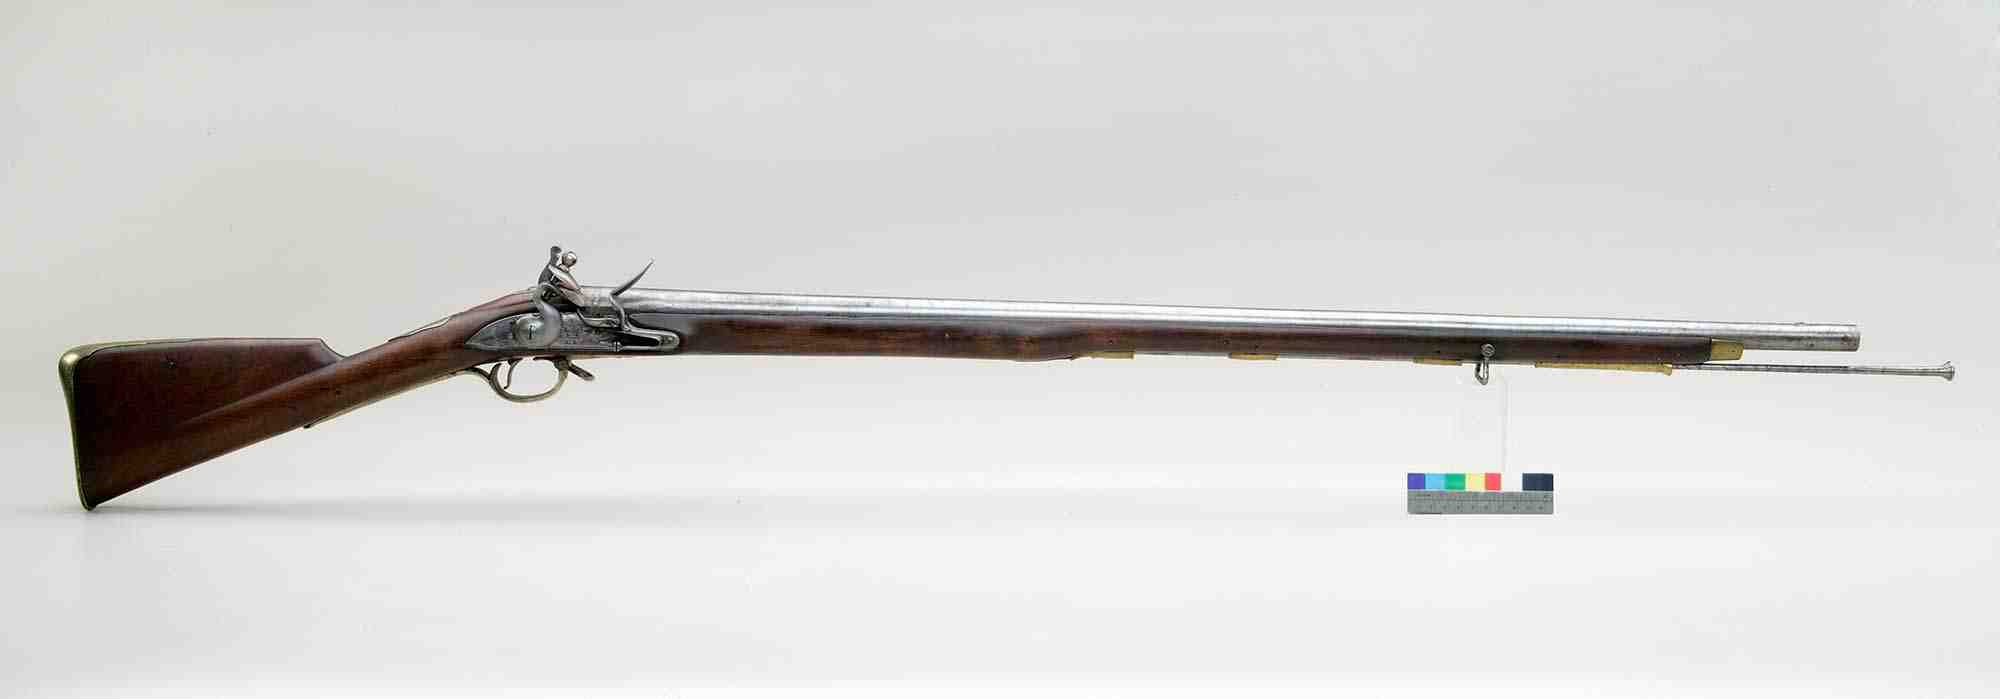 1812 flintlock musket 2000px